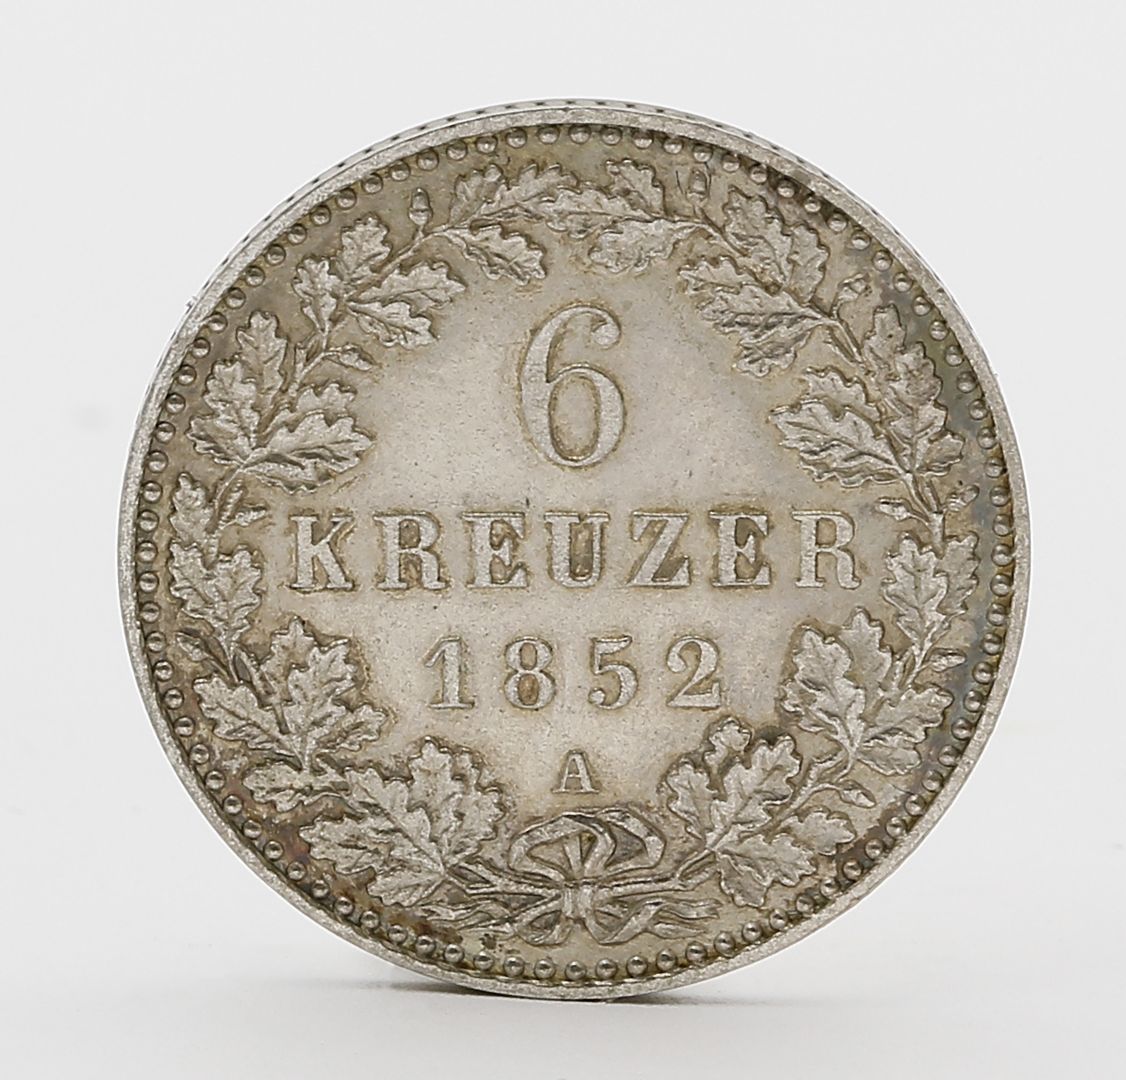 Hohenzollern-Sigmaringen, Friedrich Wilhelm IV. von Preußen, 6 Kreuzer 1852 A.